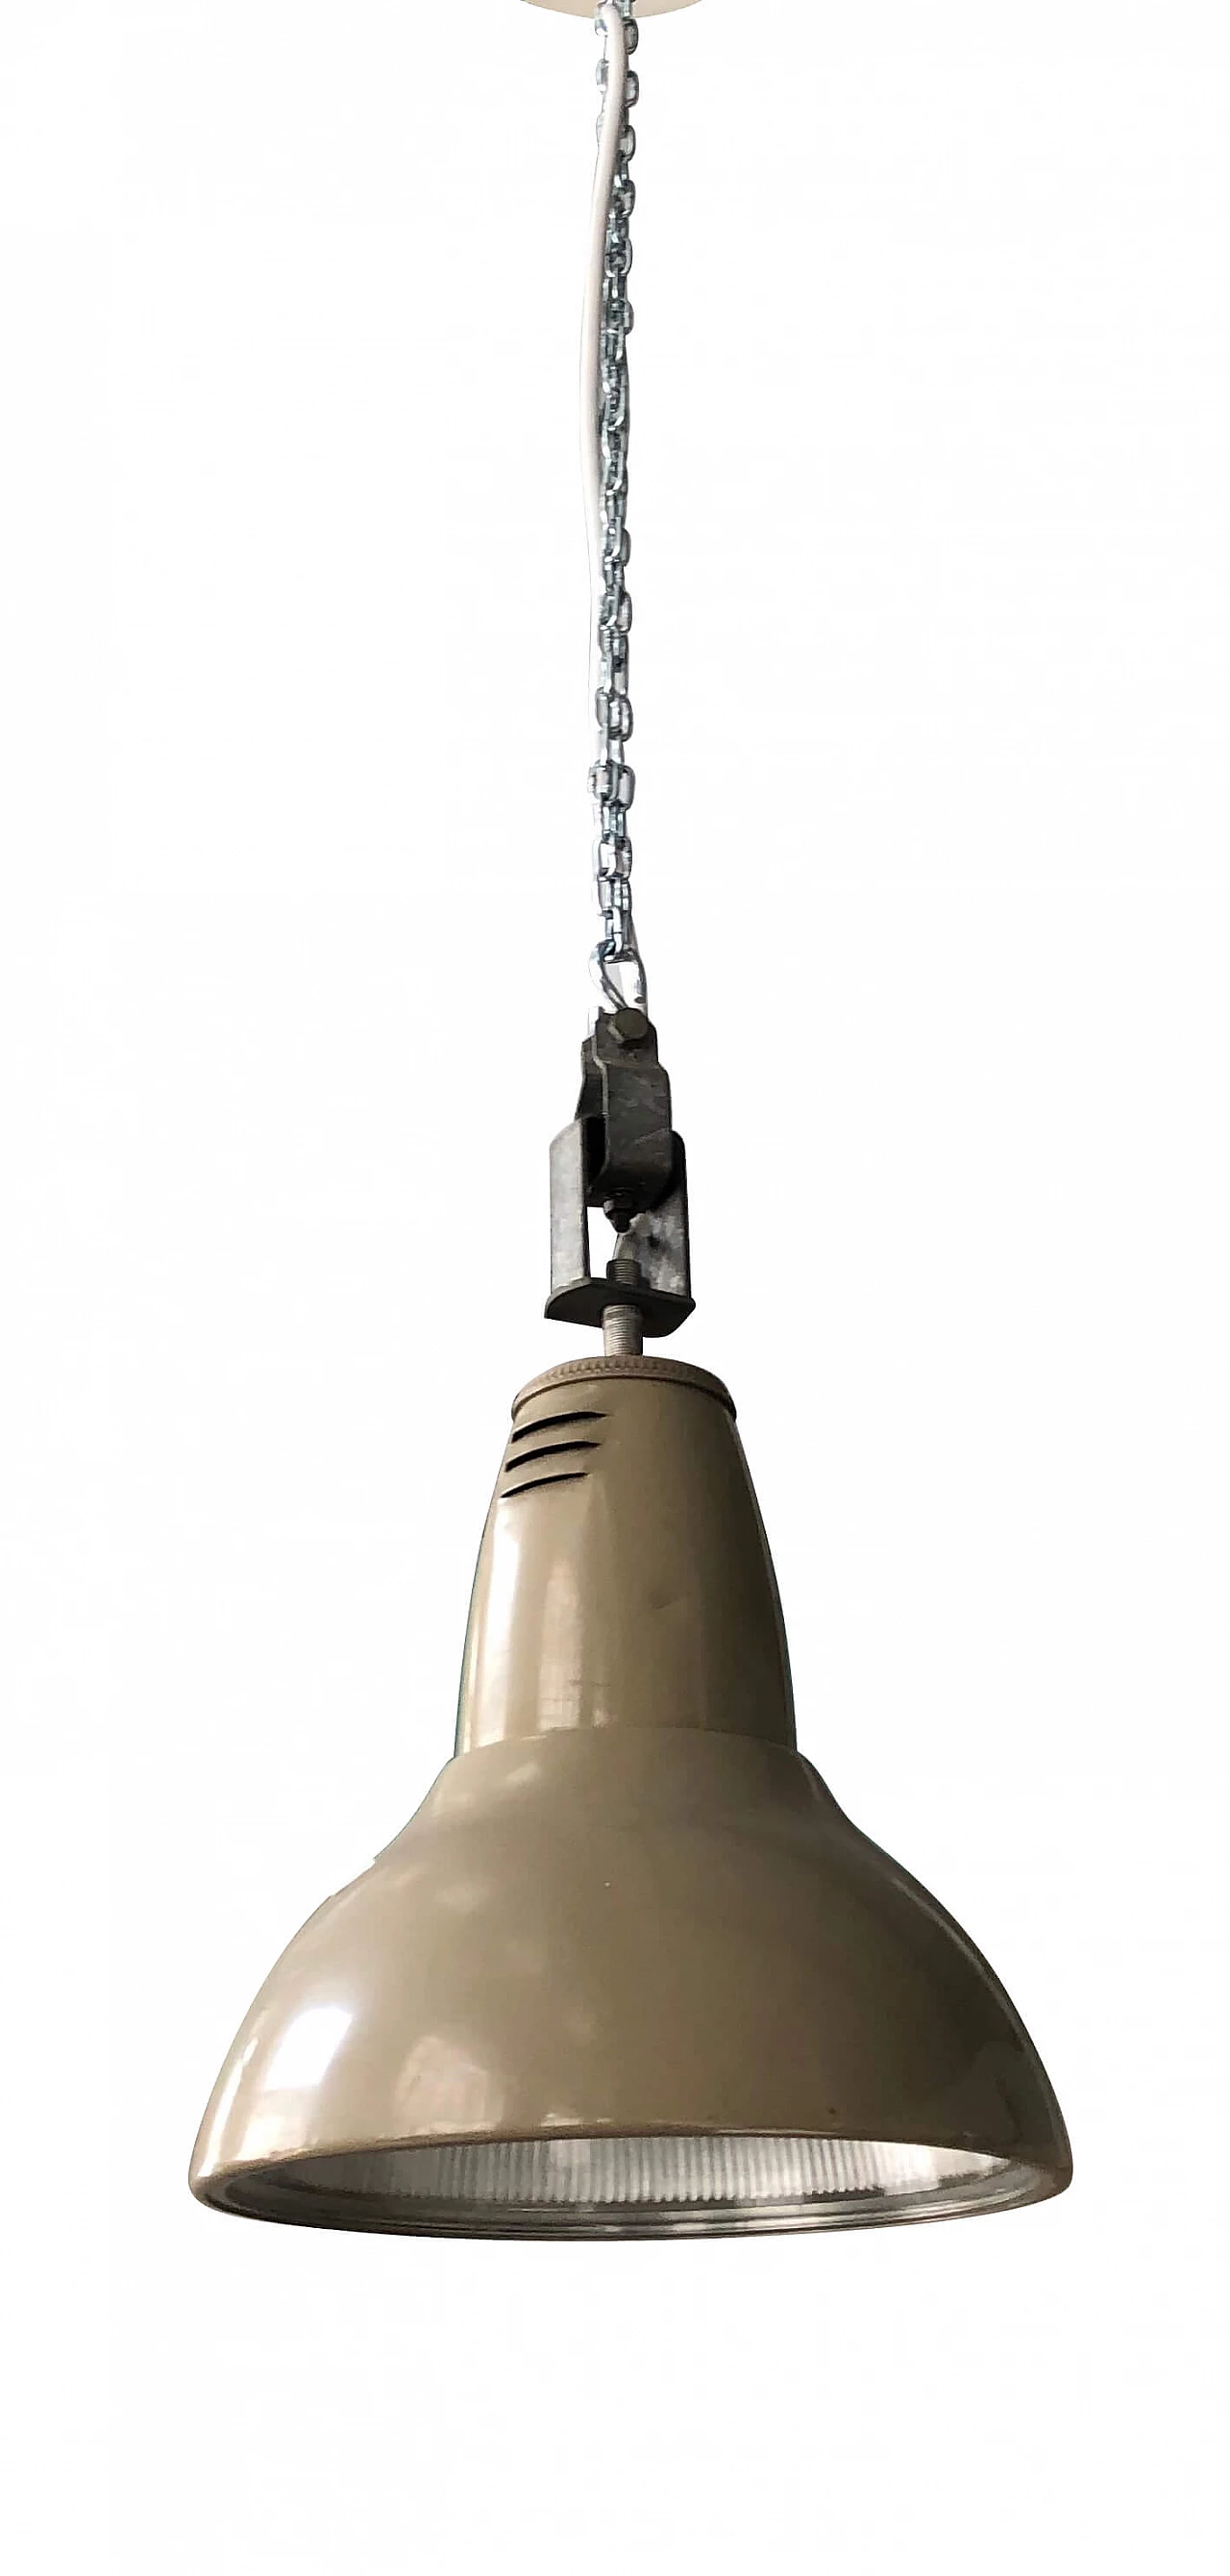 Painted metal industrial ceiling lamp, 1940s 1303820